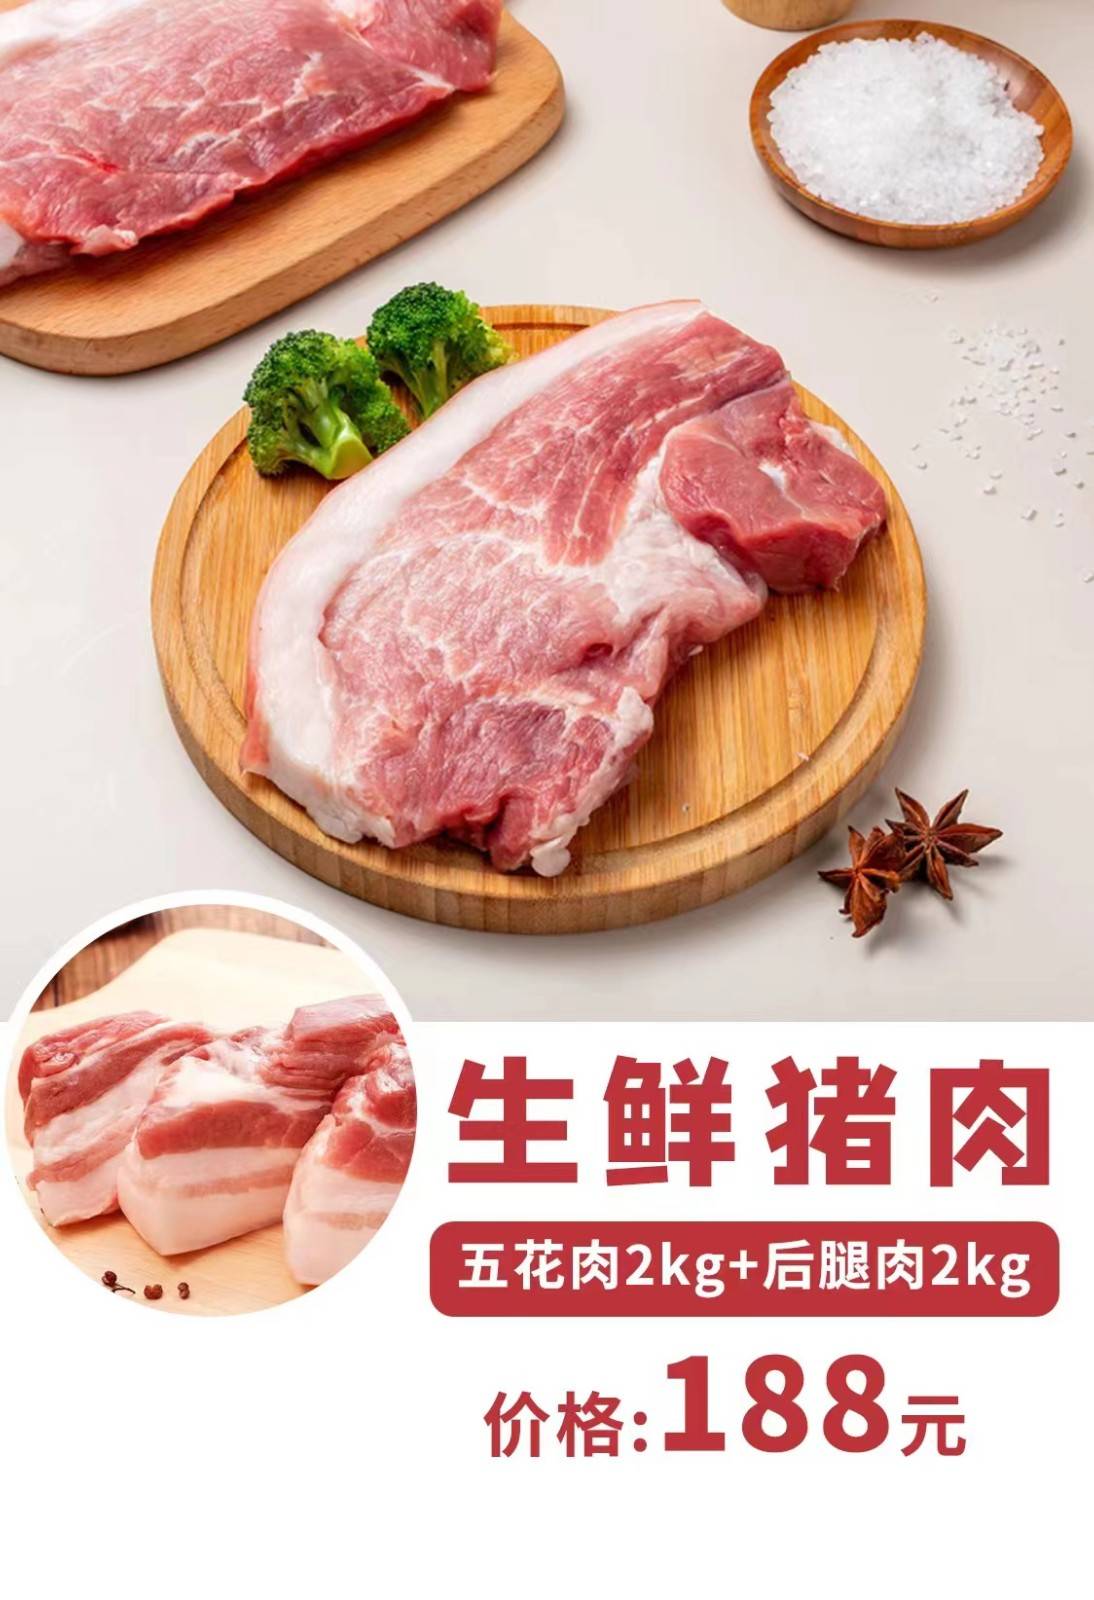 上海全区持证物流直达配送，单份188元8斤（平均一斤23.5元）， 一人可购买多份，同一地址50份起送，绿佩生鲜猪肉：五花肉2kg+后退肉2kg